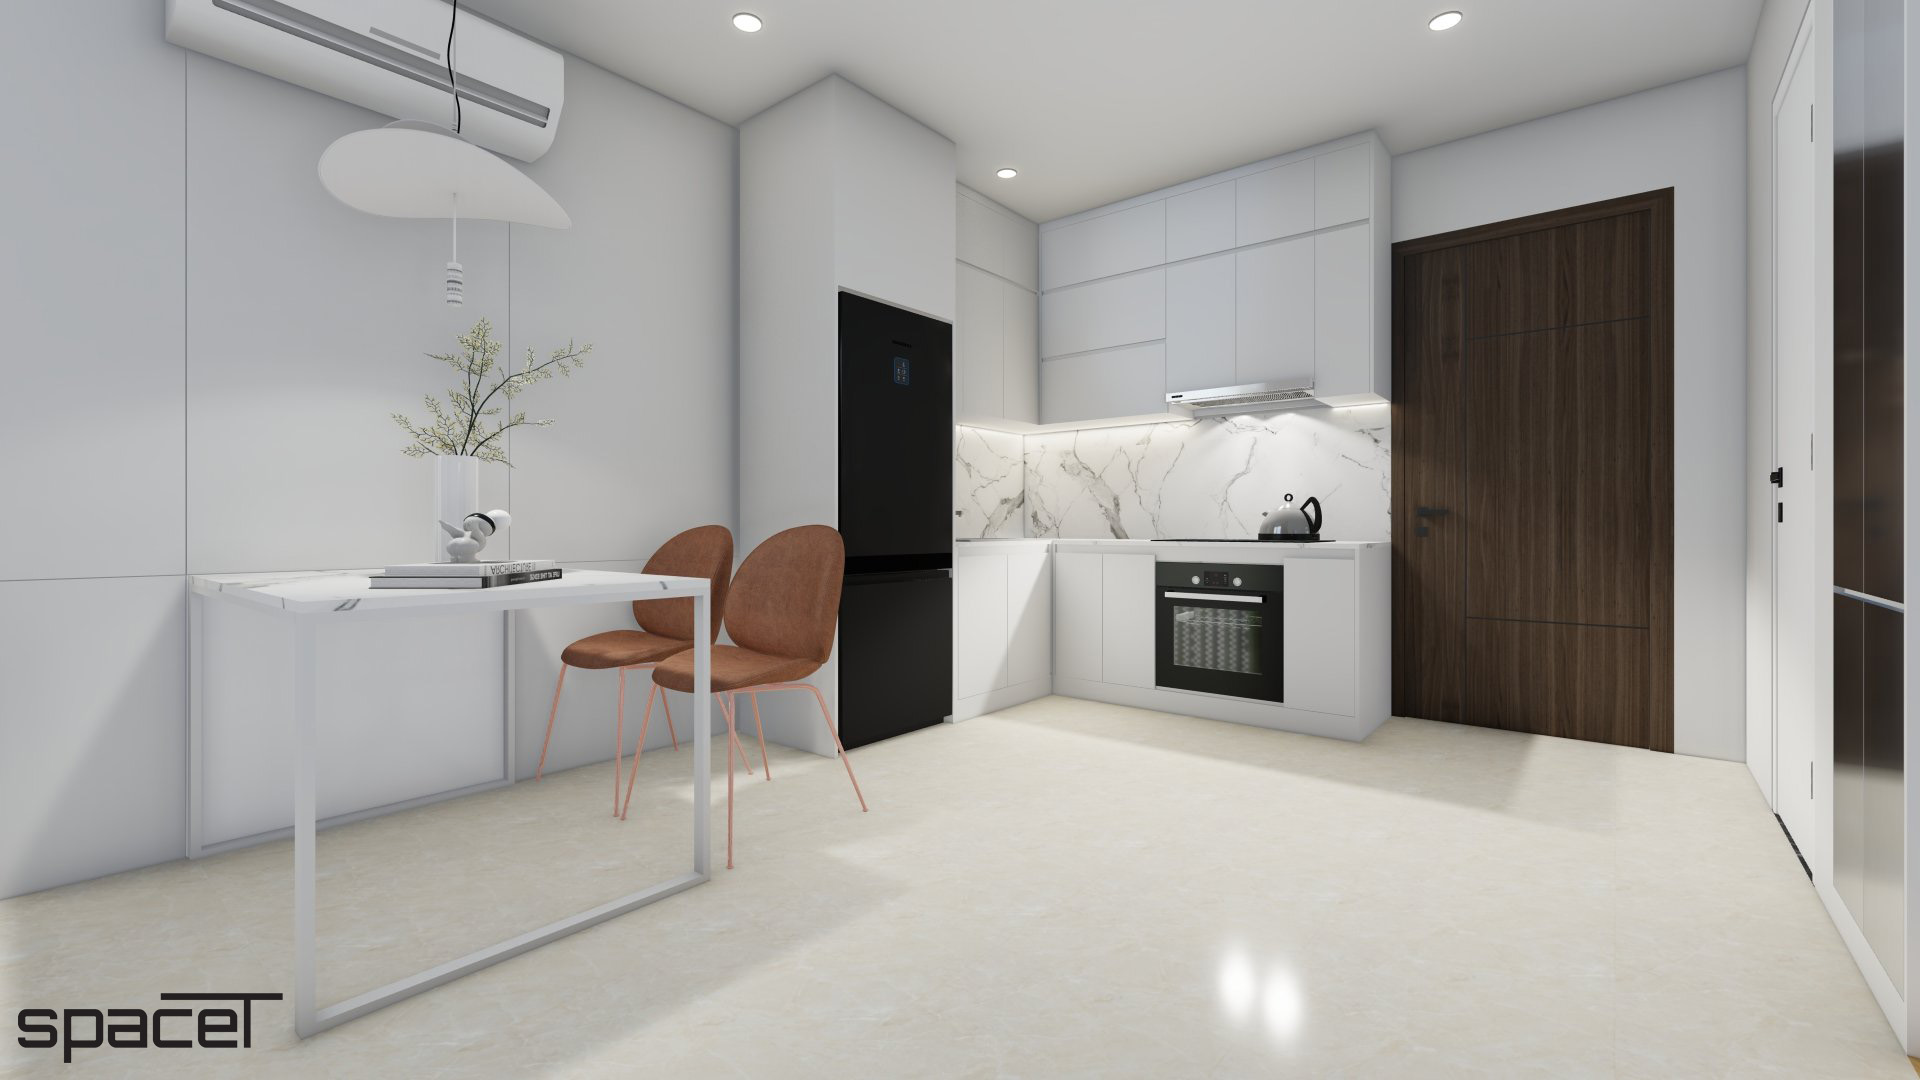 Phòng bếp, phòng ăn, phong cách Tối giản Minimalist, thiết kế concept nội thất, căn hộ The Origami Vinhomes Quận 9